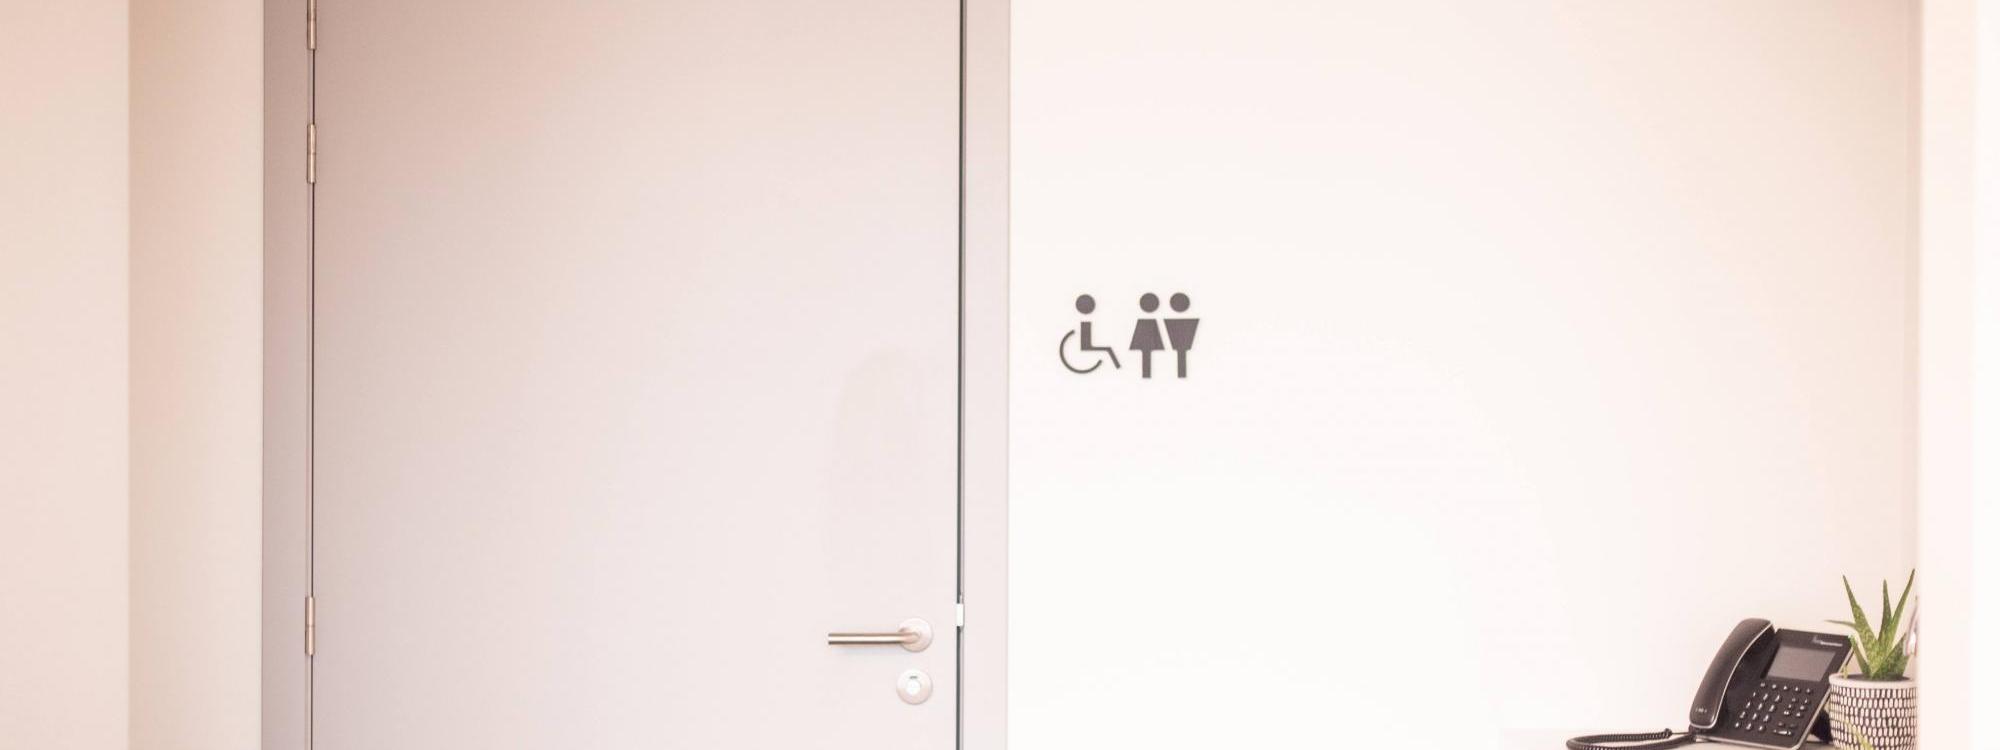 De ruime, rolstoeltoegankelijke toiletten in de vergaderruimte